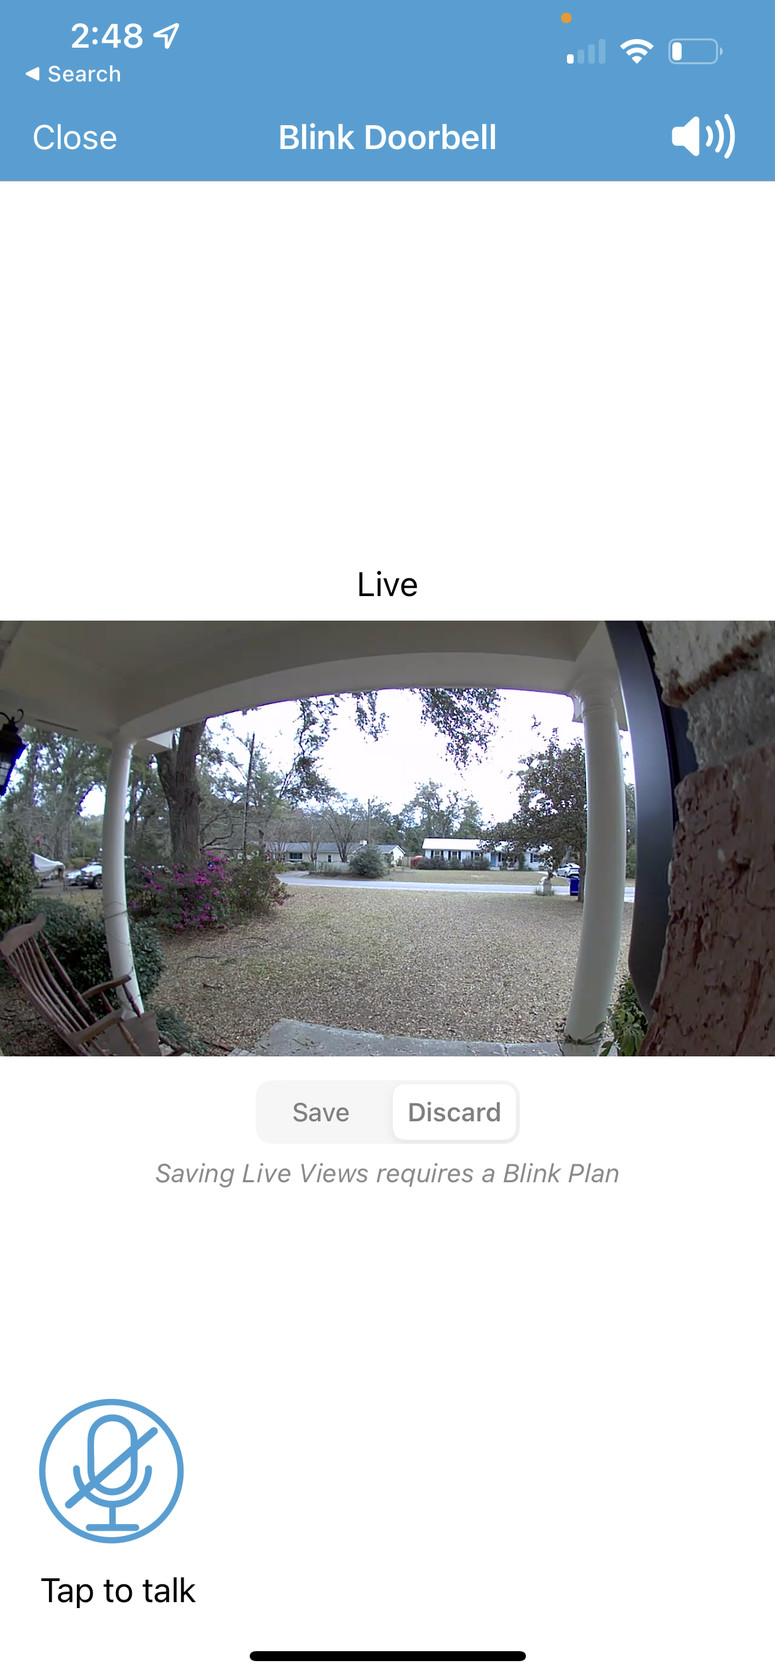 Blink Doorbell Live View